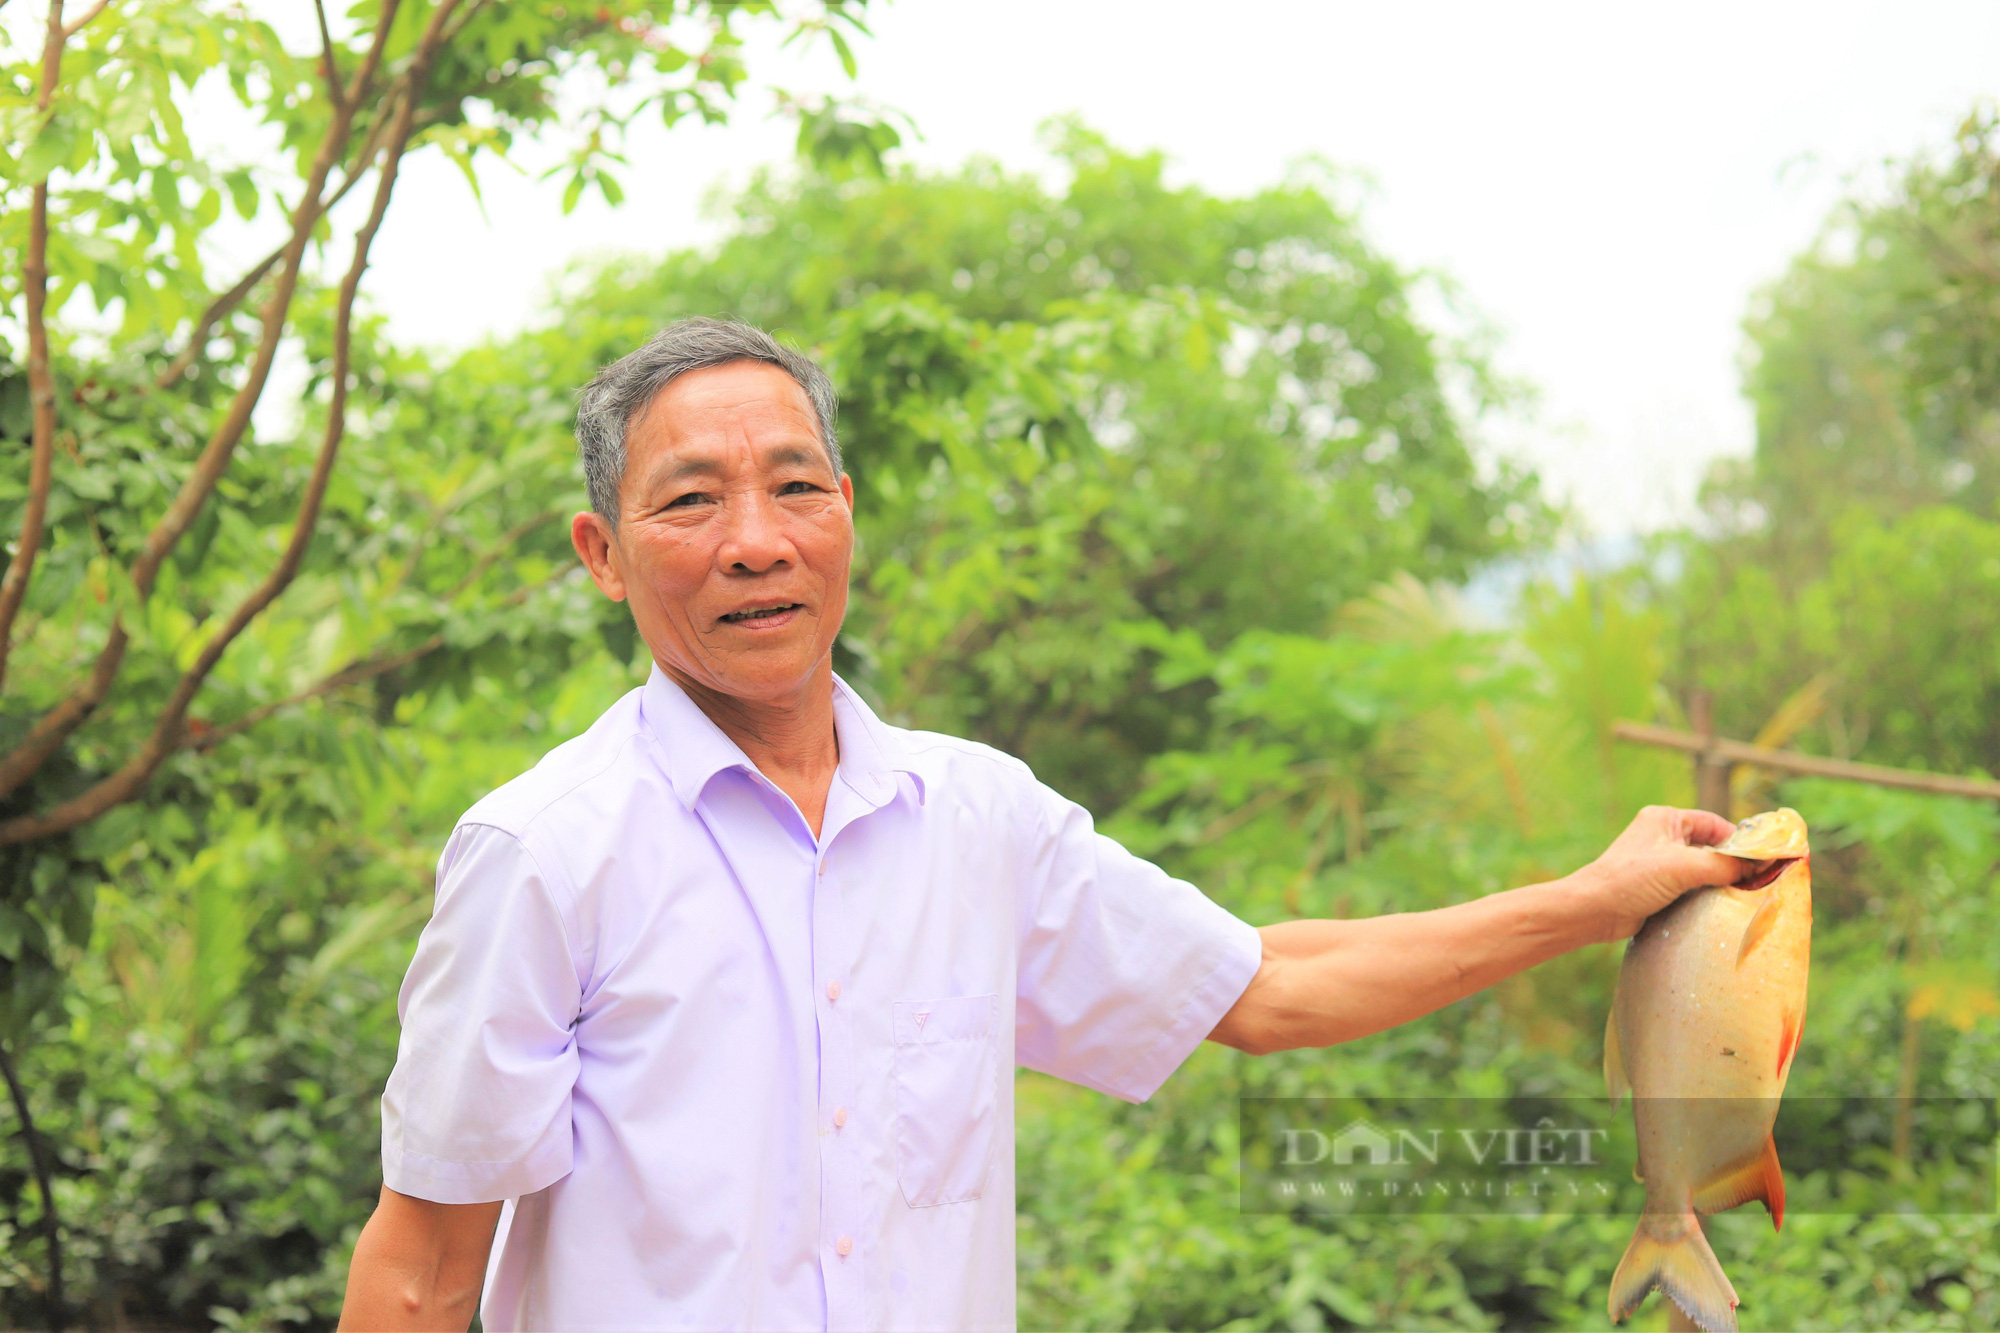 Tin Kinh tế: Biến đất hoang thành trang trại tiền tỷ, cả làng ở Hà Tĩnh phục lăn ông nông dân “khùng”